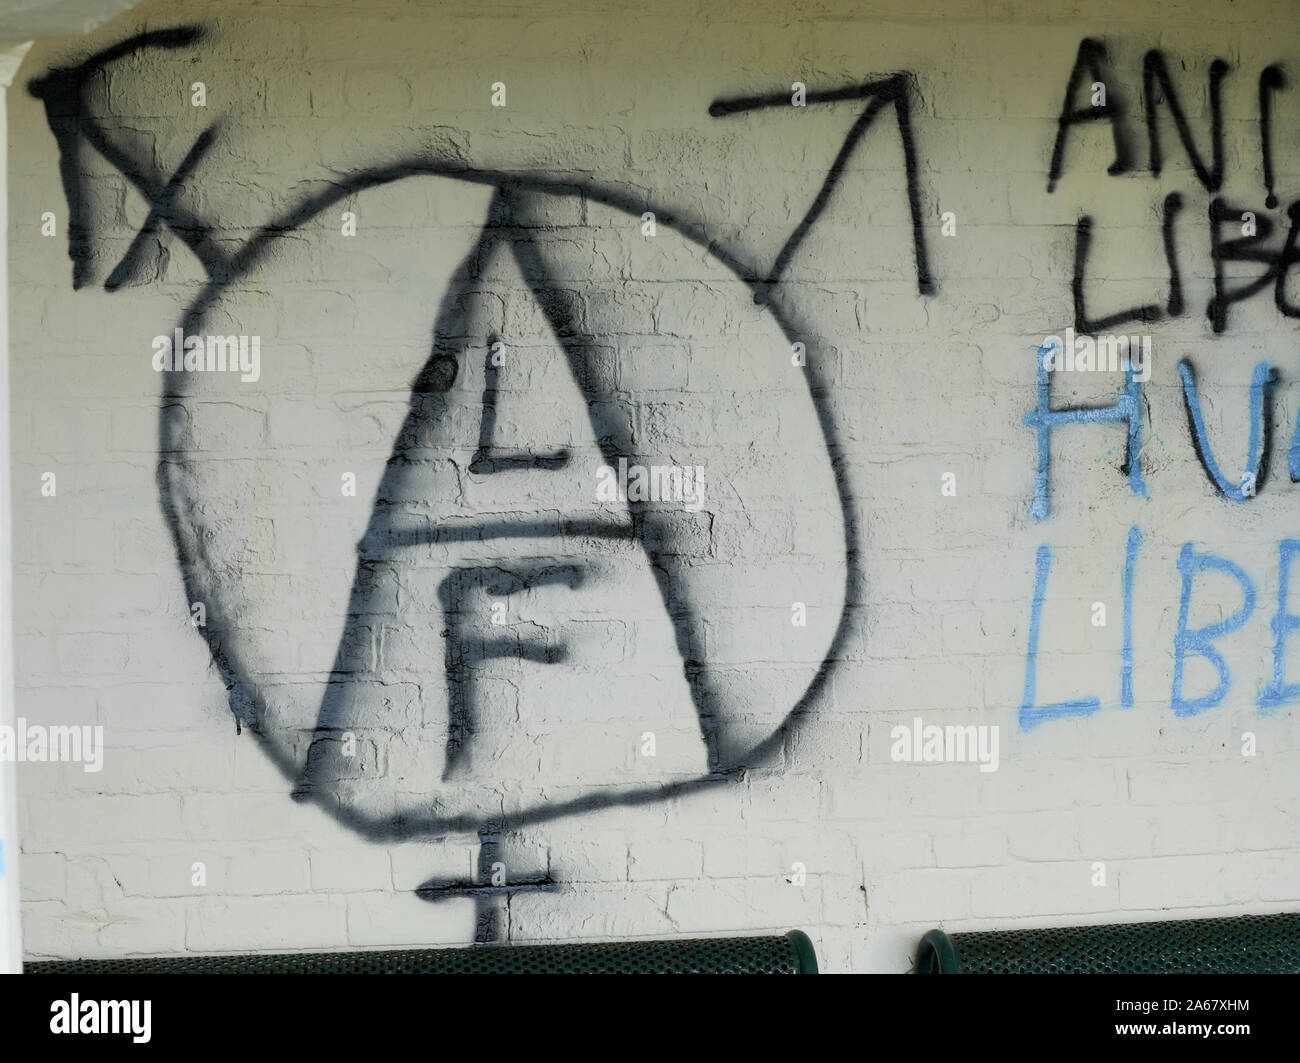 Animal Liberation Front graffiti Stockfoto